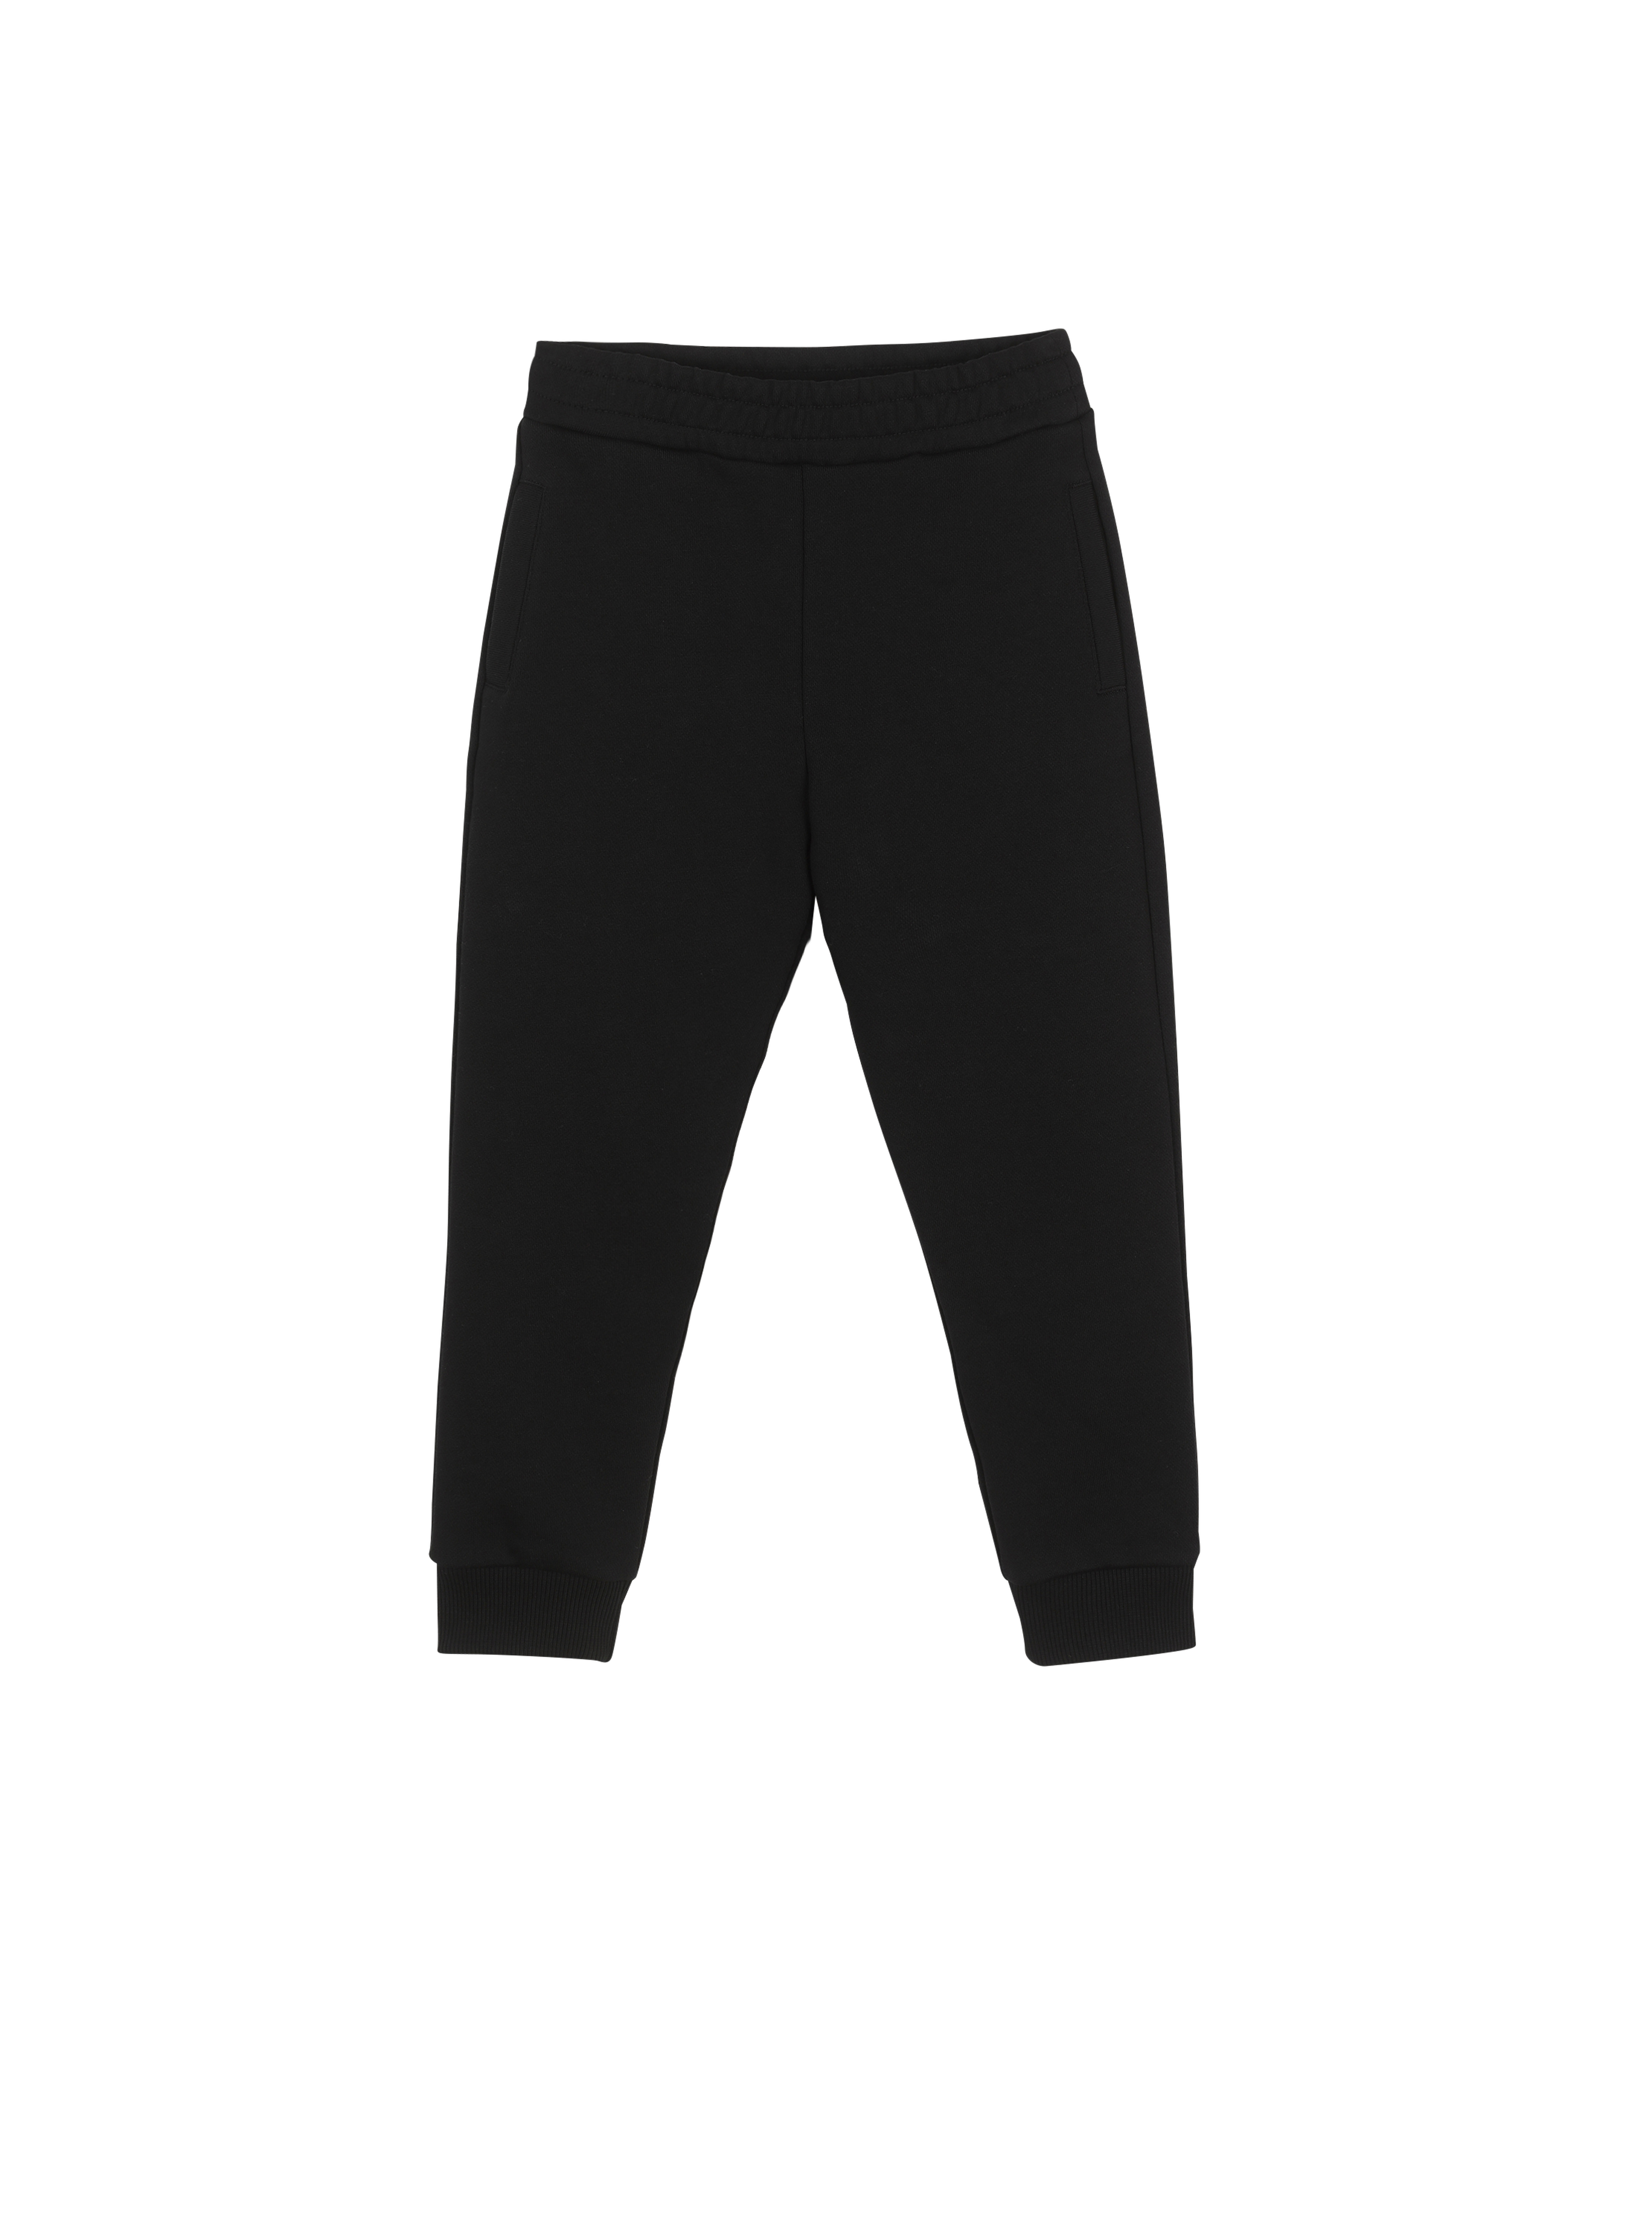 Cotton jogging bottoms with Balmain logo, black